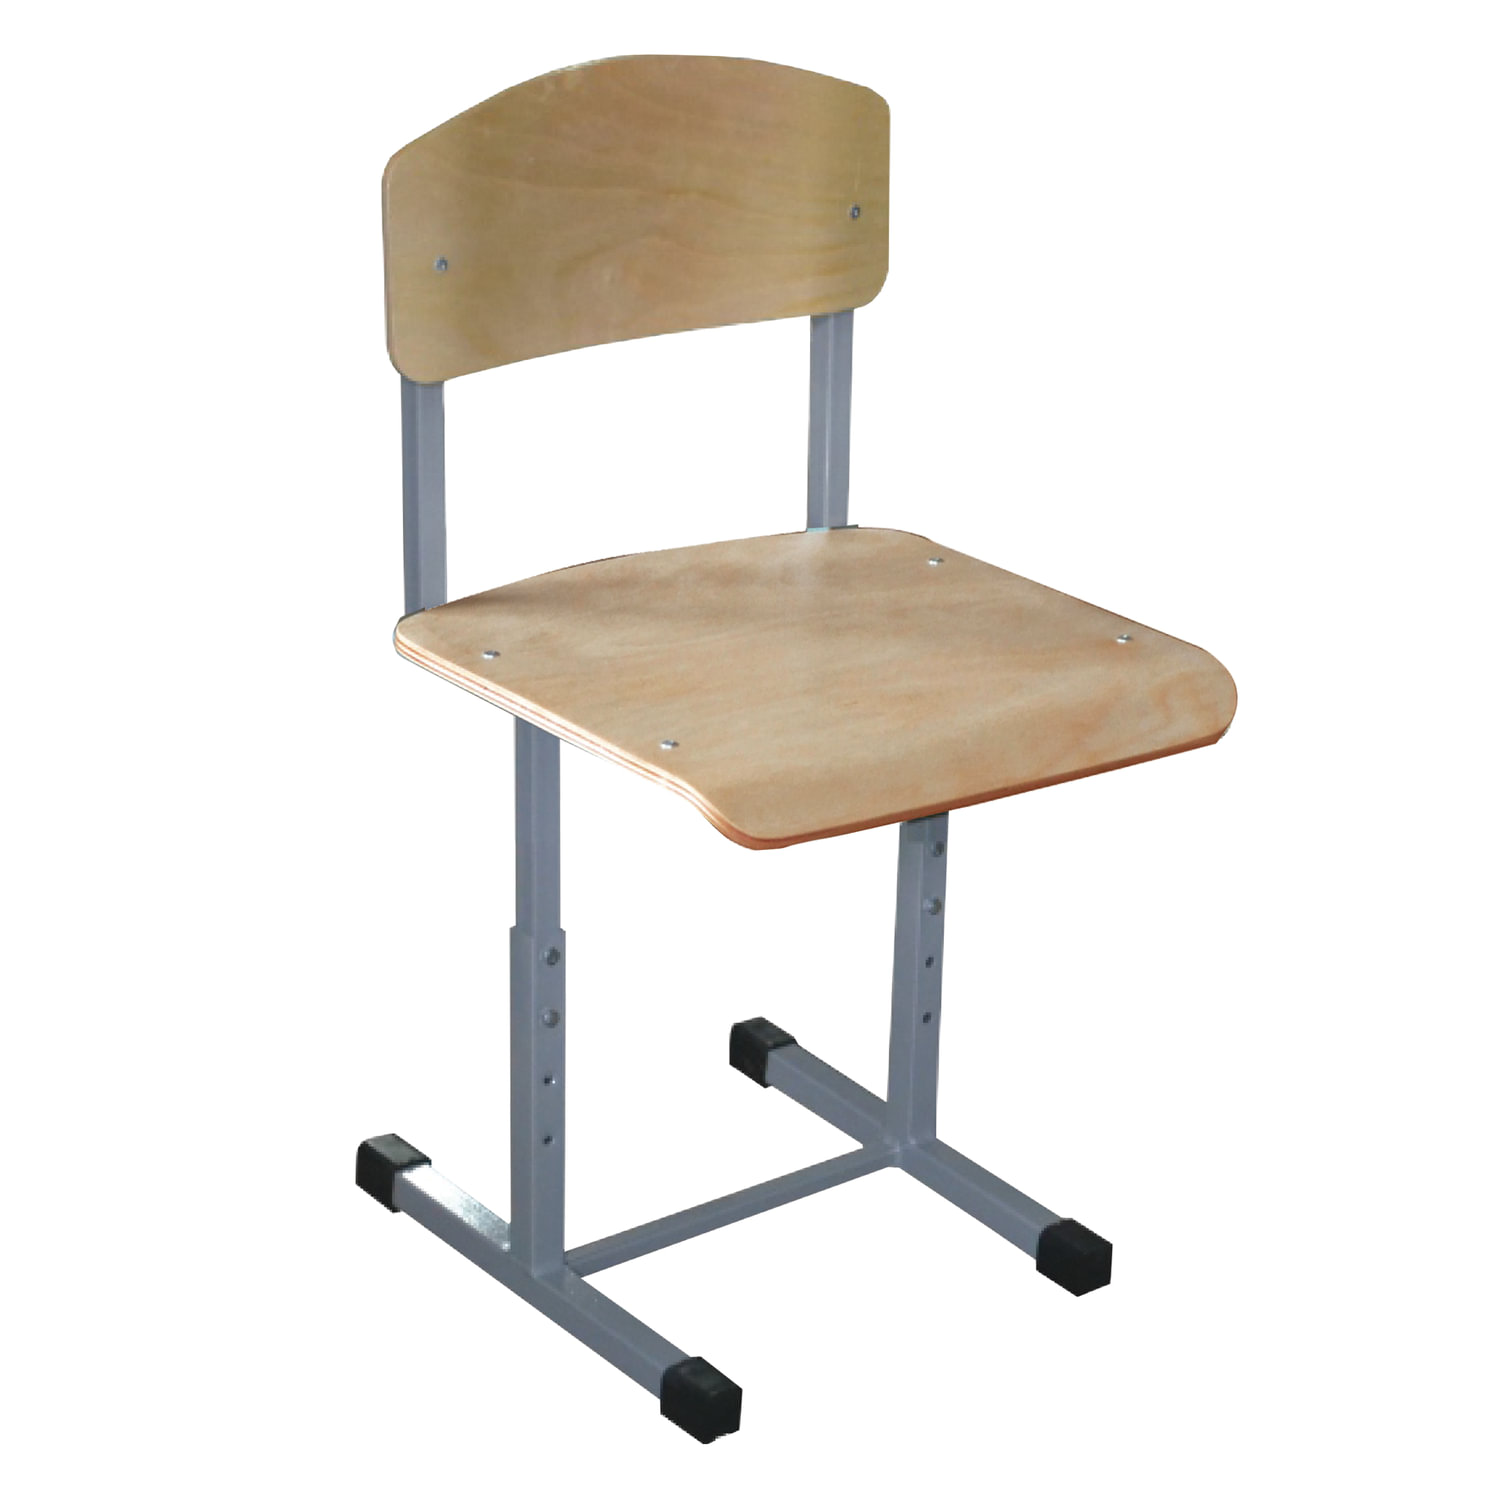 обычный стул для школьника